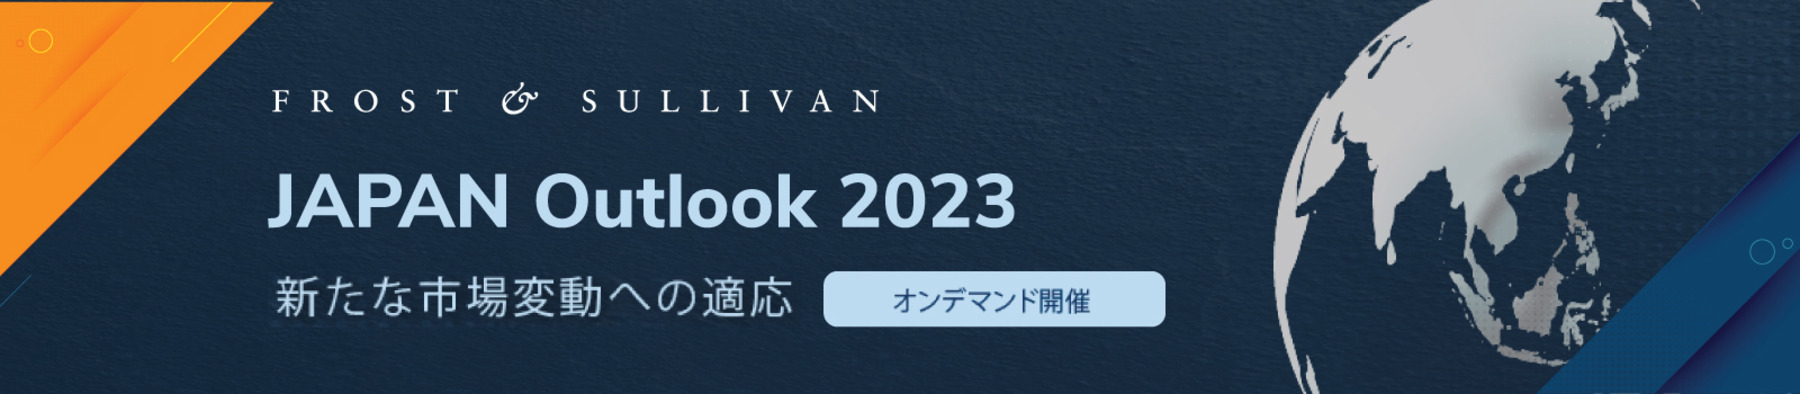 JAPAN-Outlook-2023_Opt2.jpg (1)